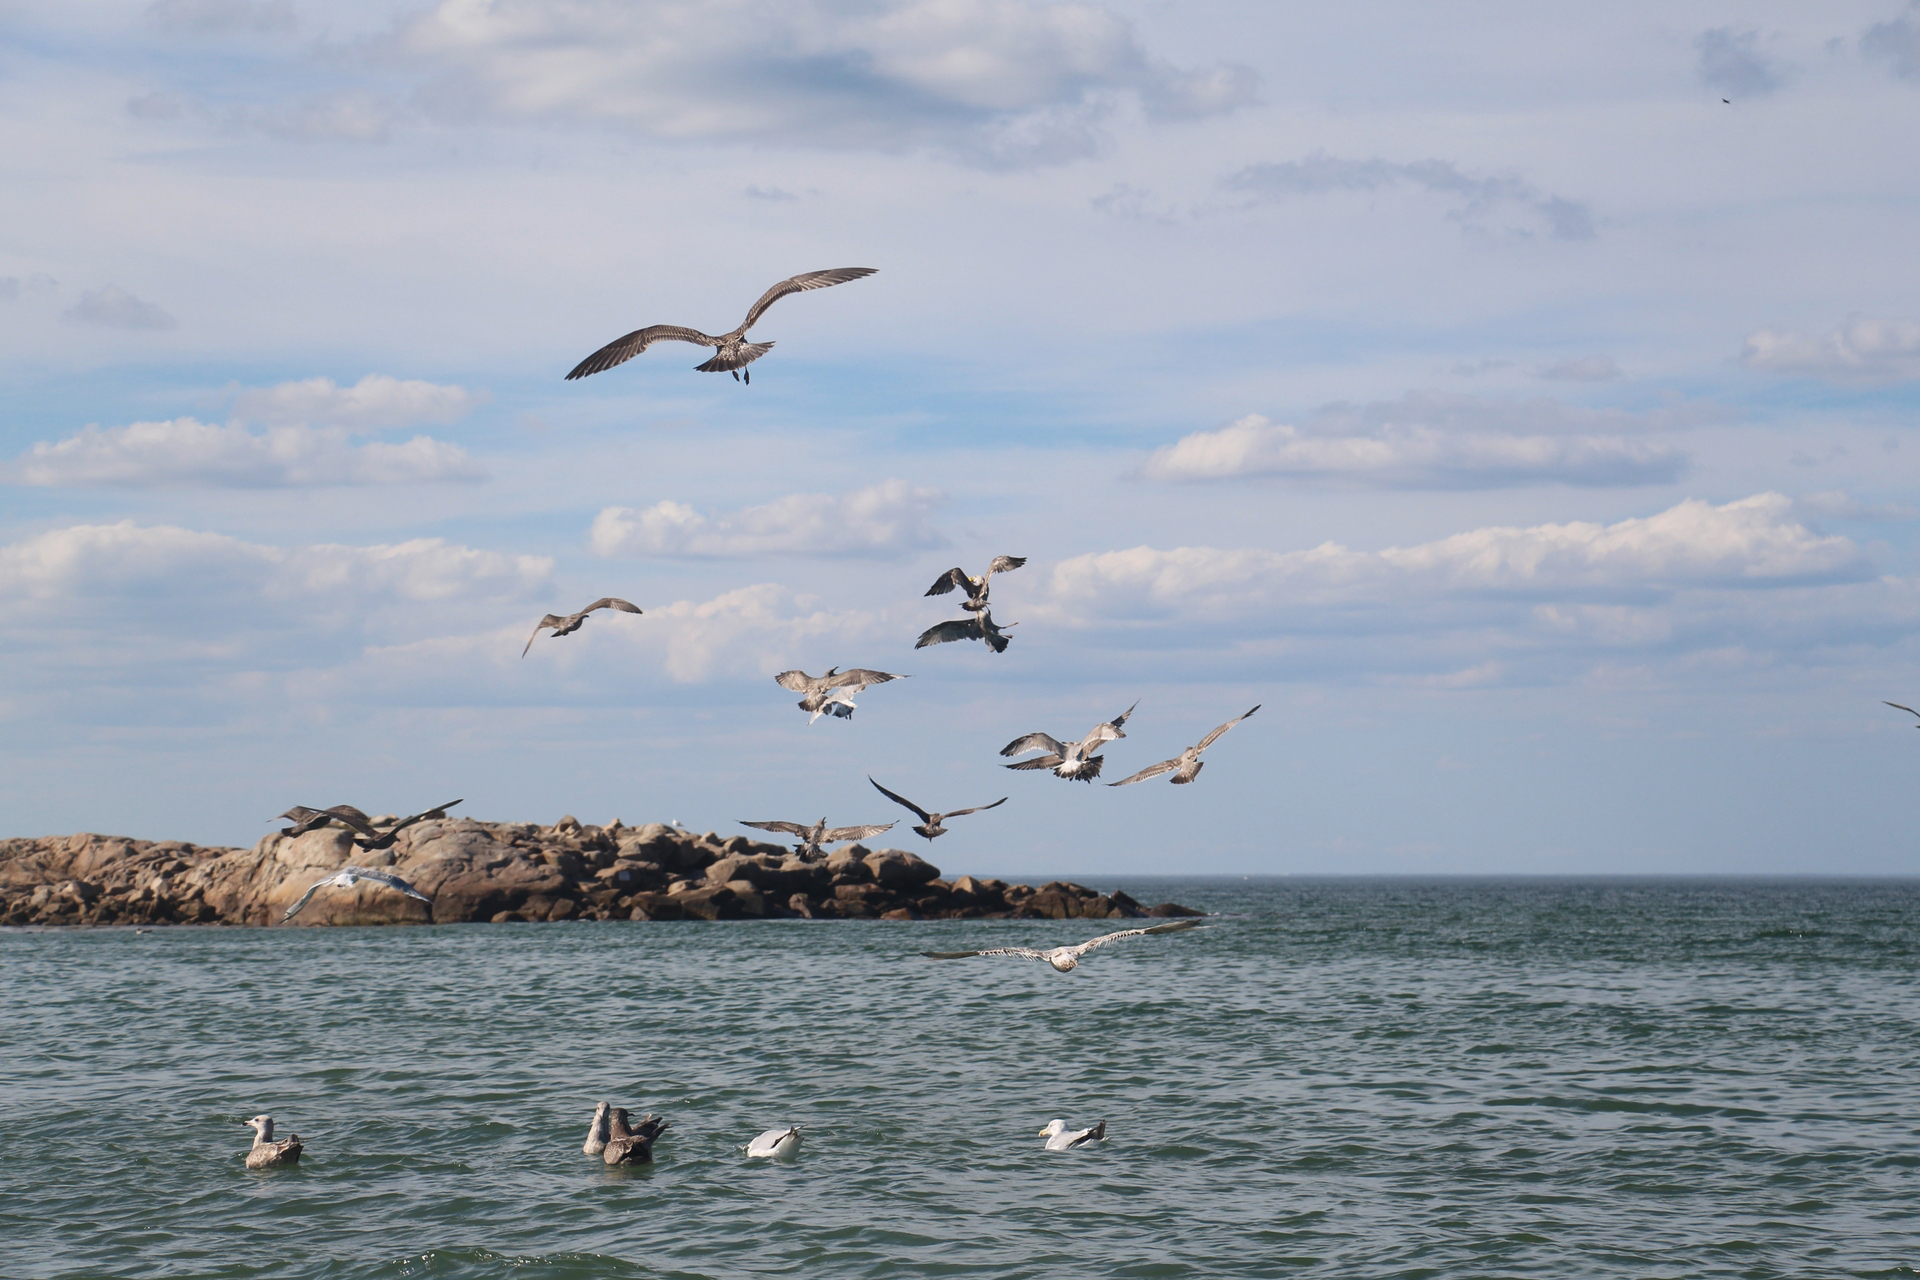 Gulls flying over the ocean